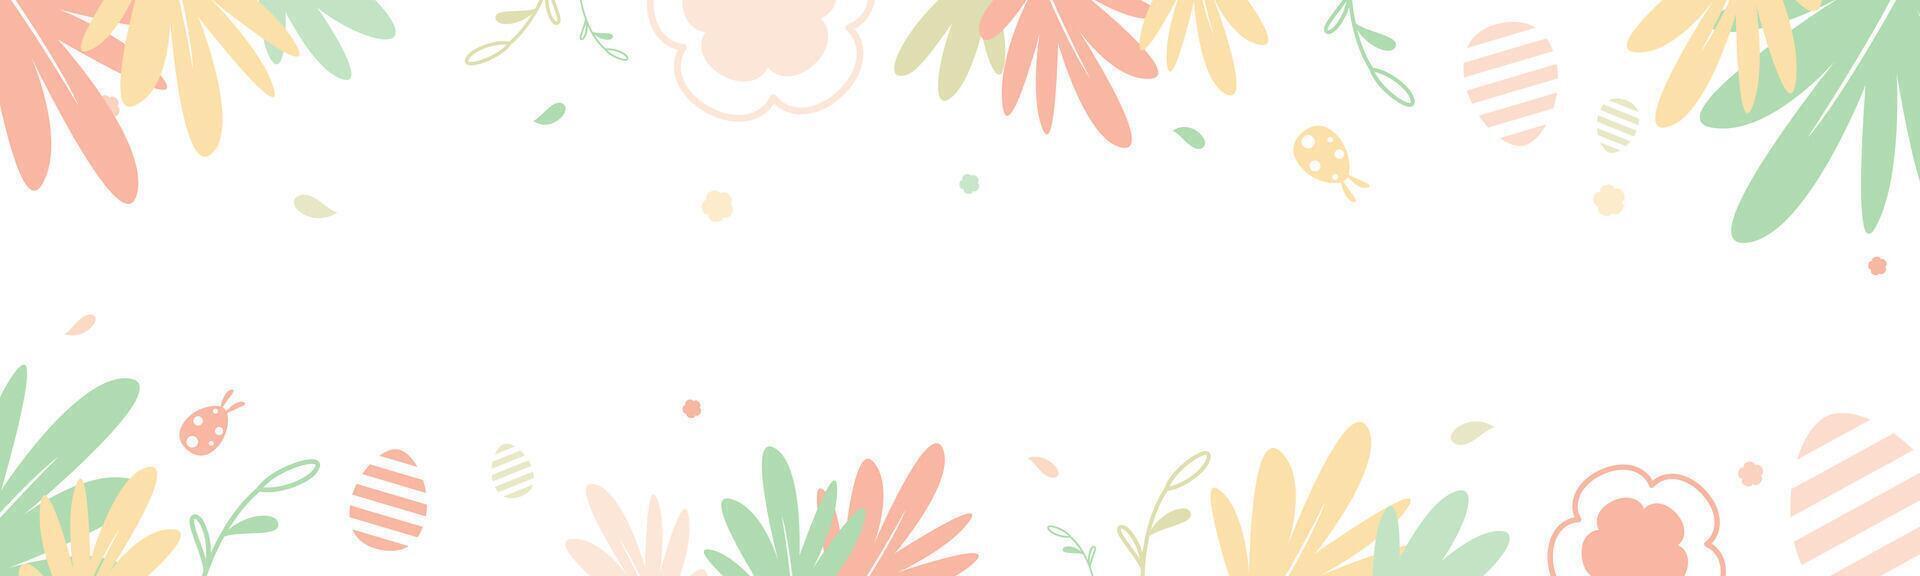 Lycklig påsk baner på vit bakgrund dekorerad med färgrik blommig och löv platt vektor illustration. horisontell pastell bakgrund design för hemsida i vår tema.